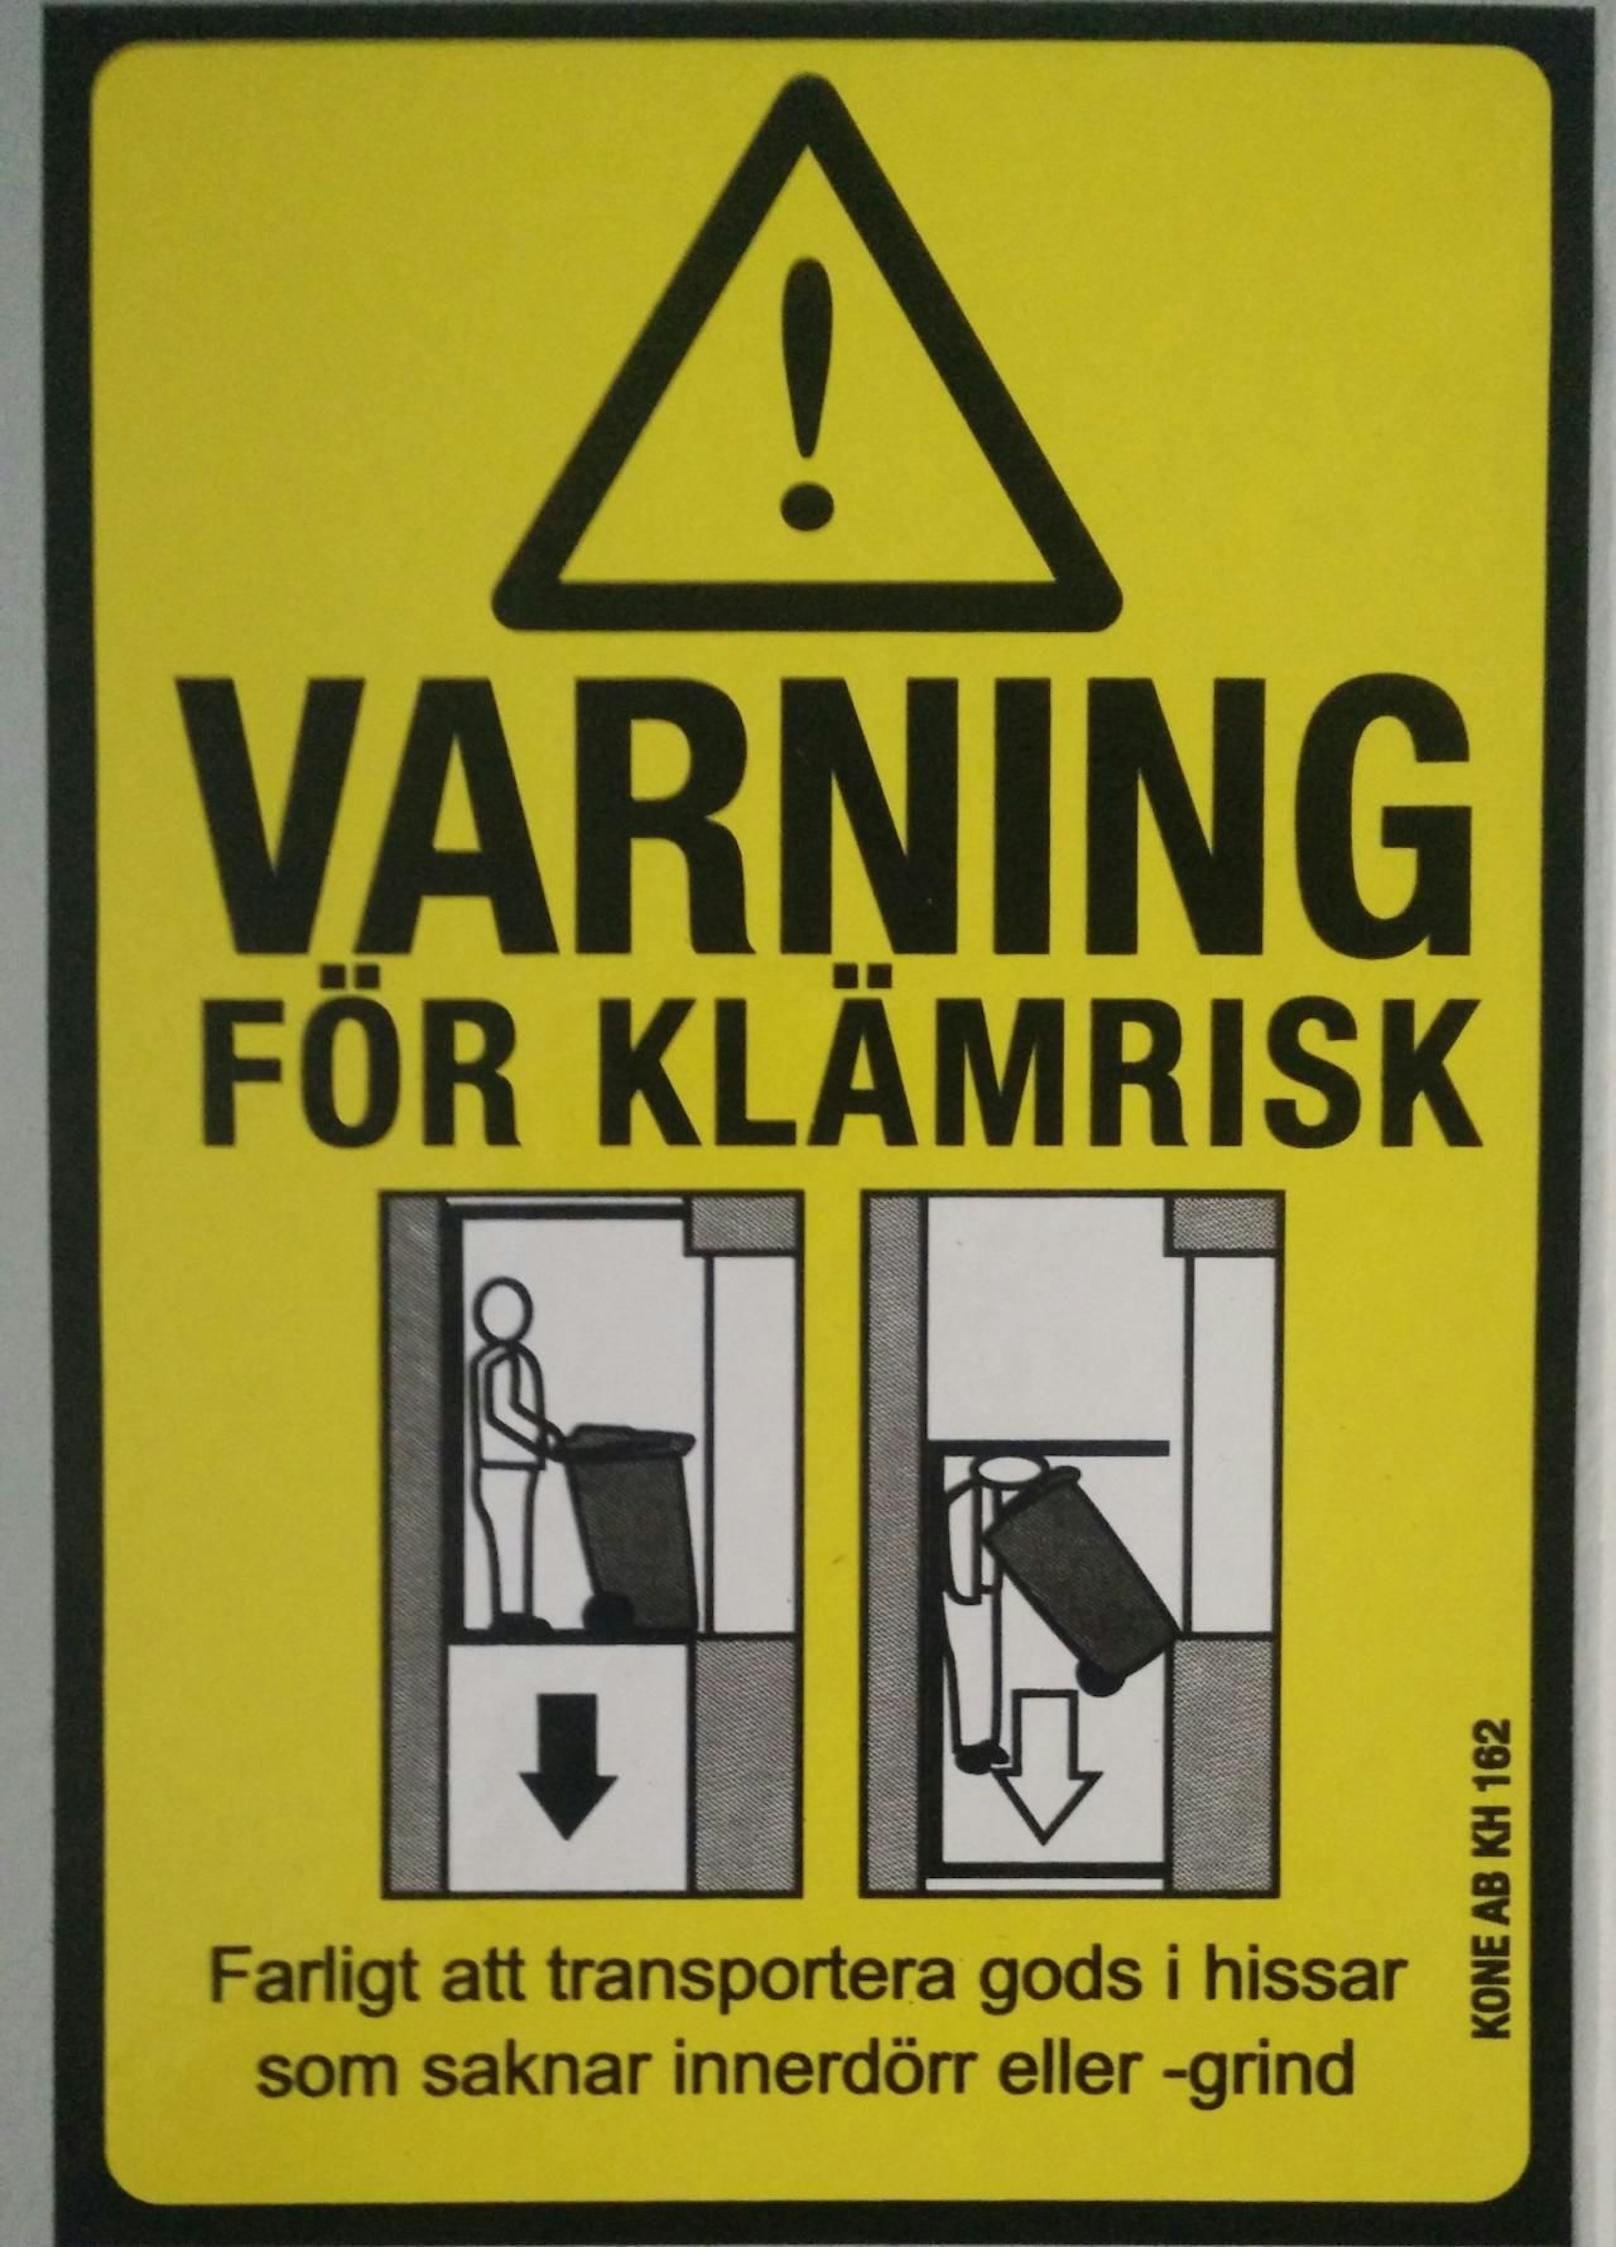 Aufpassen, sonst wird der Aufzug zum Himmelfahrtskommando - davor warnt dieses Schild, das ein Leserreporter in Schweden gesichtet hat!